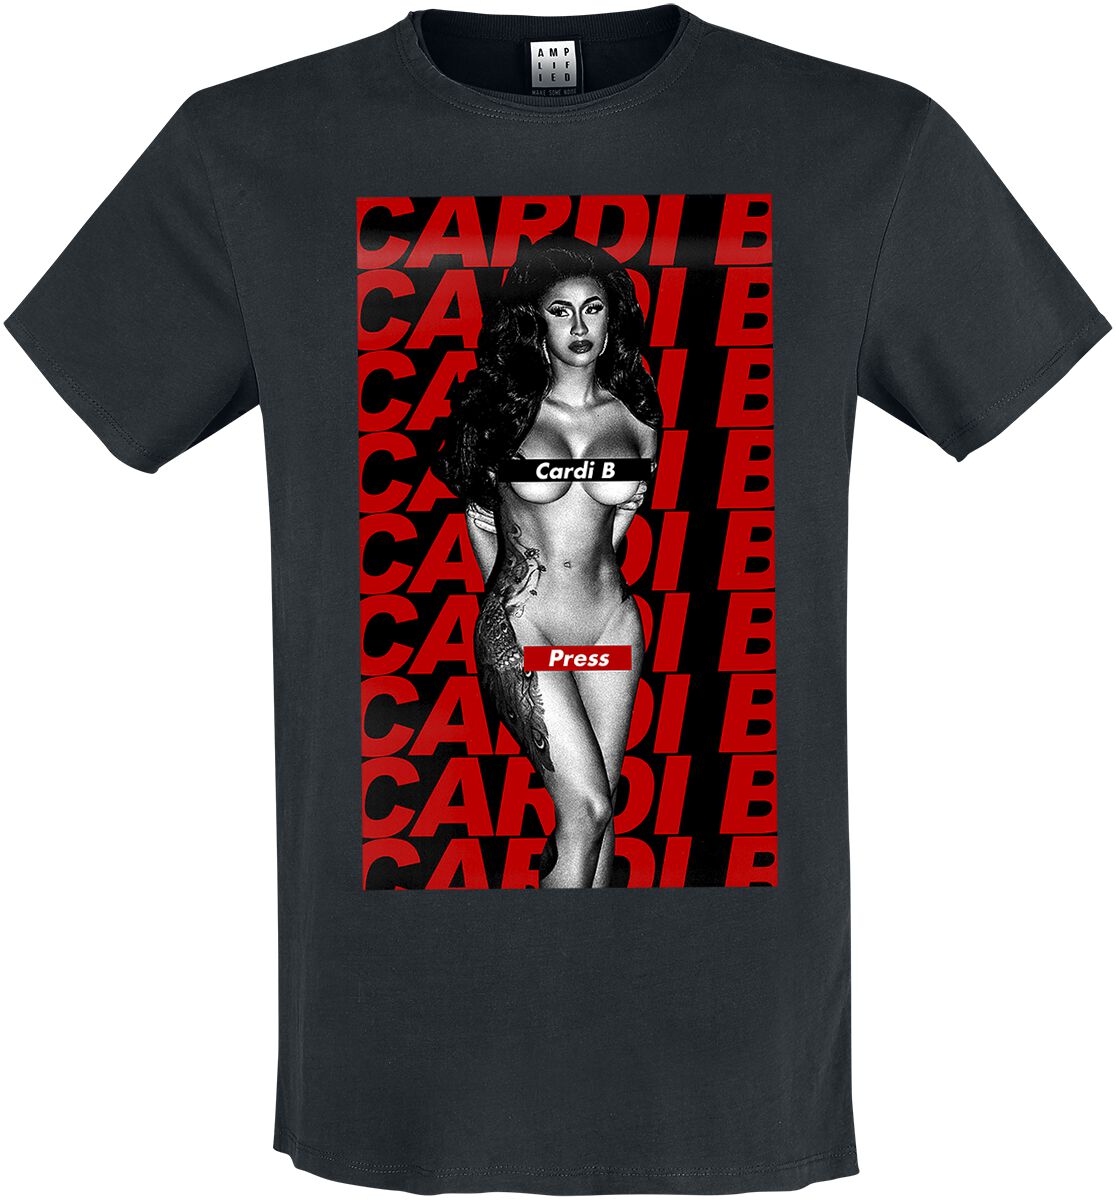 Cardi B T-Shirt - Amplified Collection - Press - S bis XXL - für Männer - Größe S - schwarz  - Lizenziertes Merchandise!